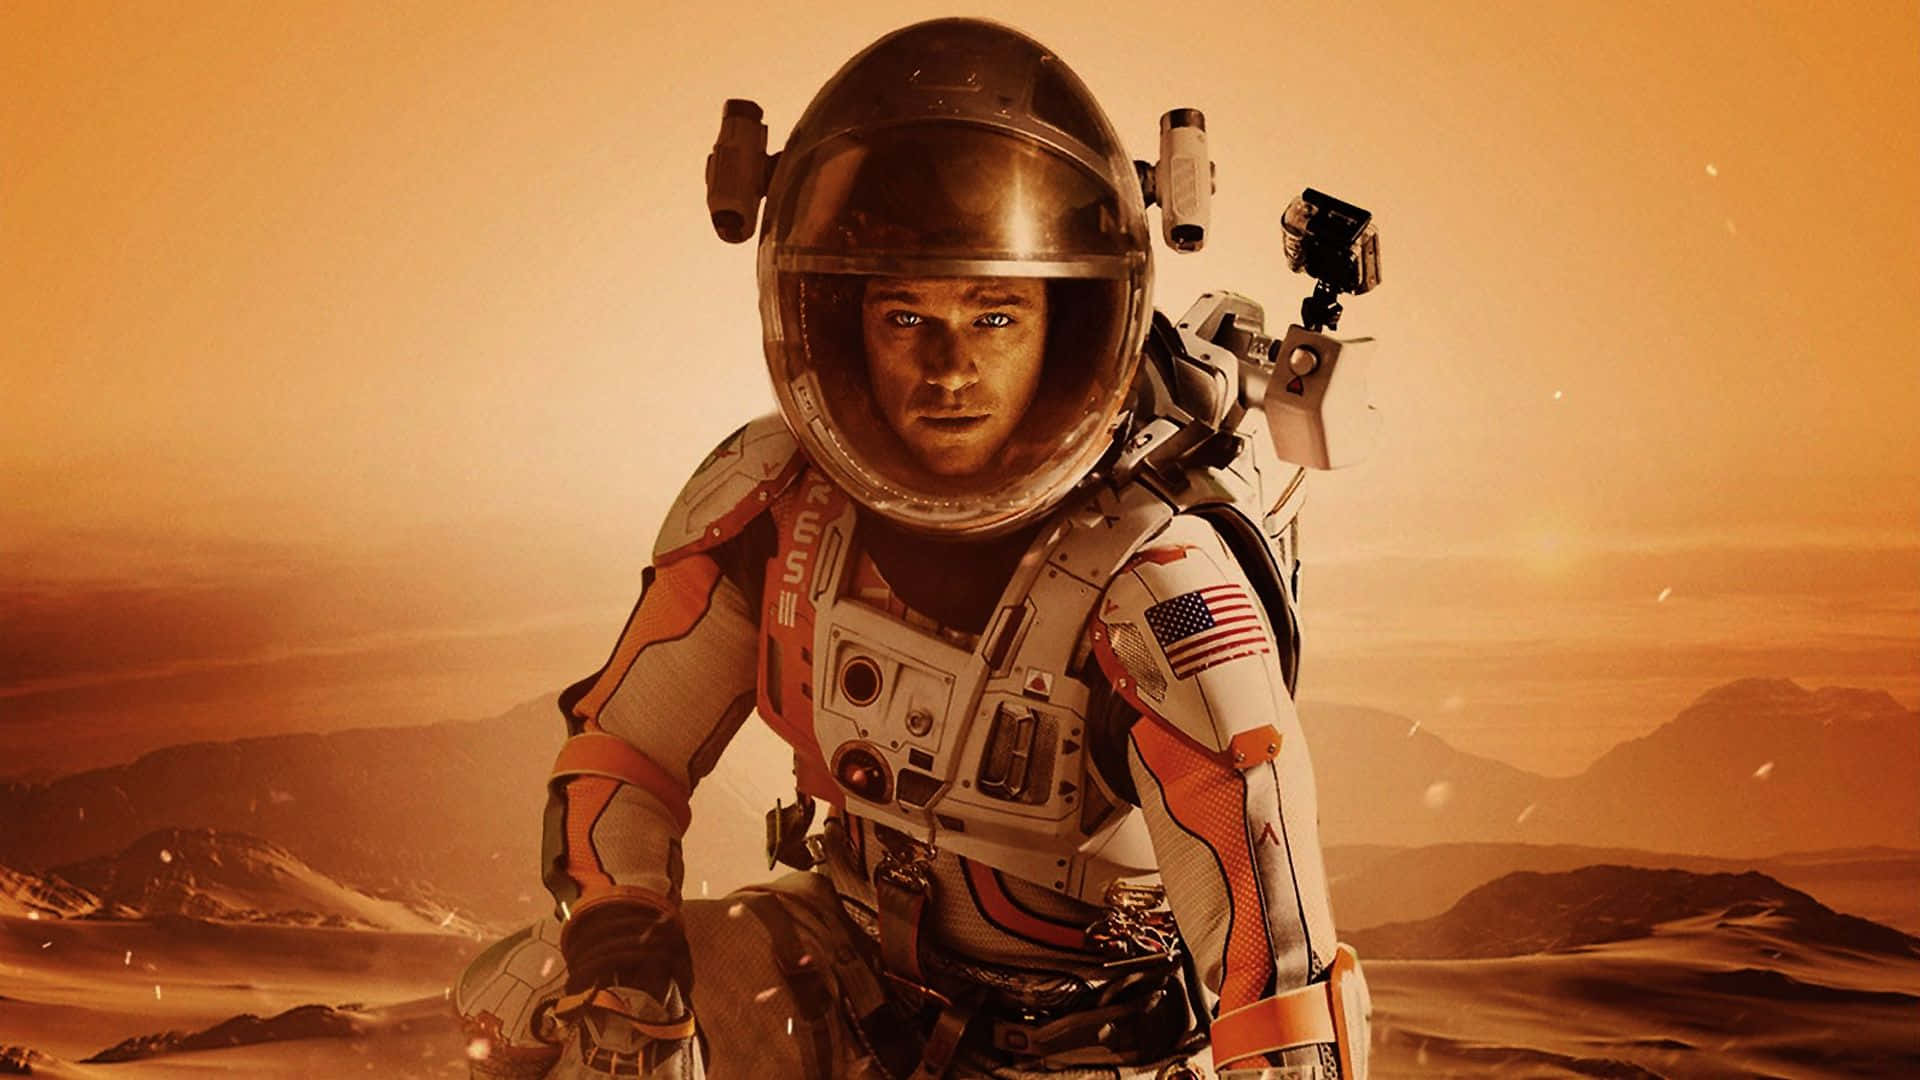 Matt Damon As Mark Watney Standing On The Harsh Martian Landscape